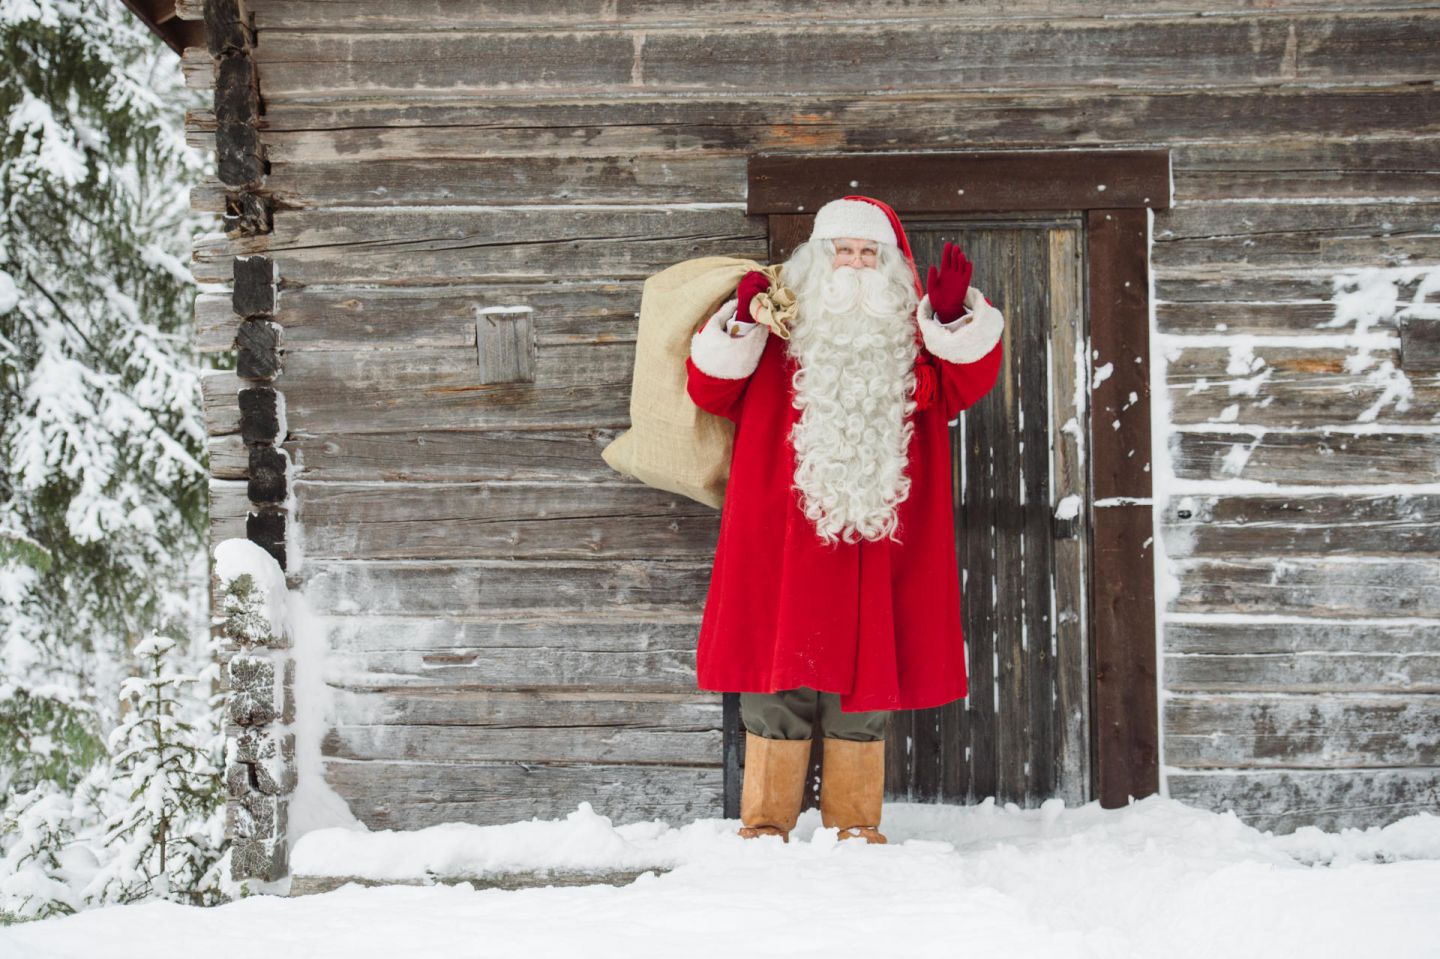 Santa Claus in Finnish Lapland